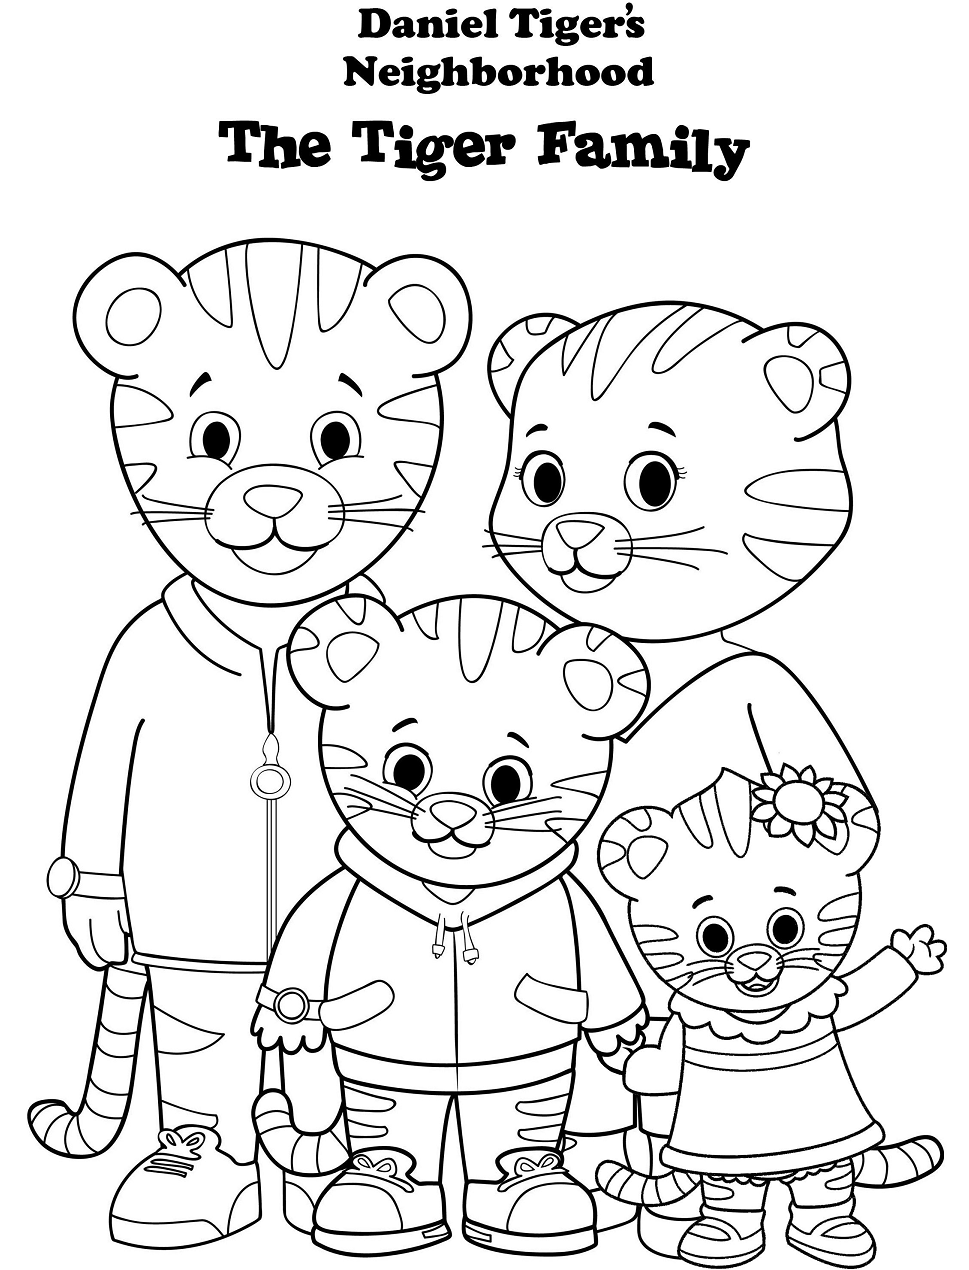 Familia Daniel Tiger